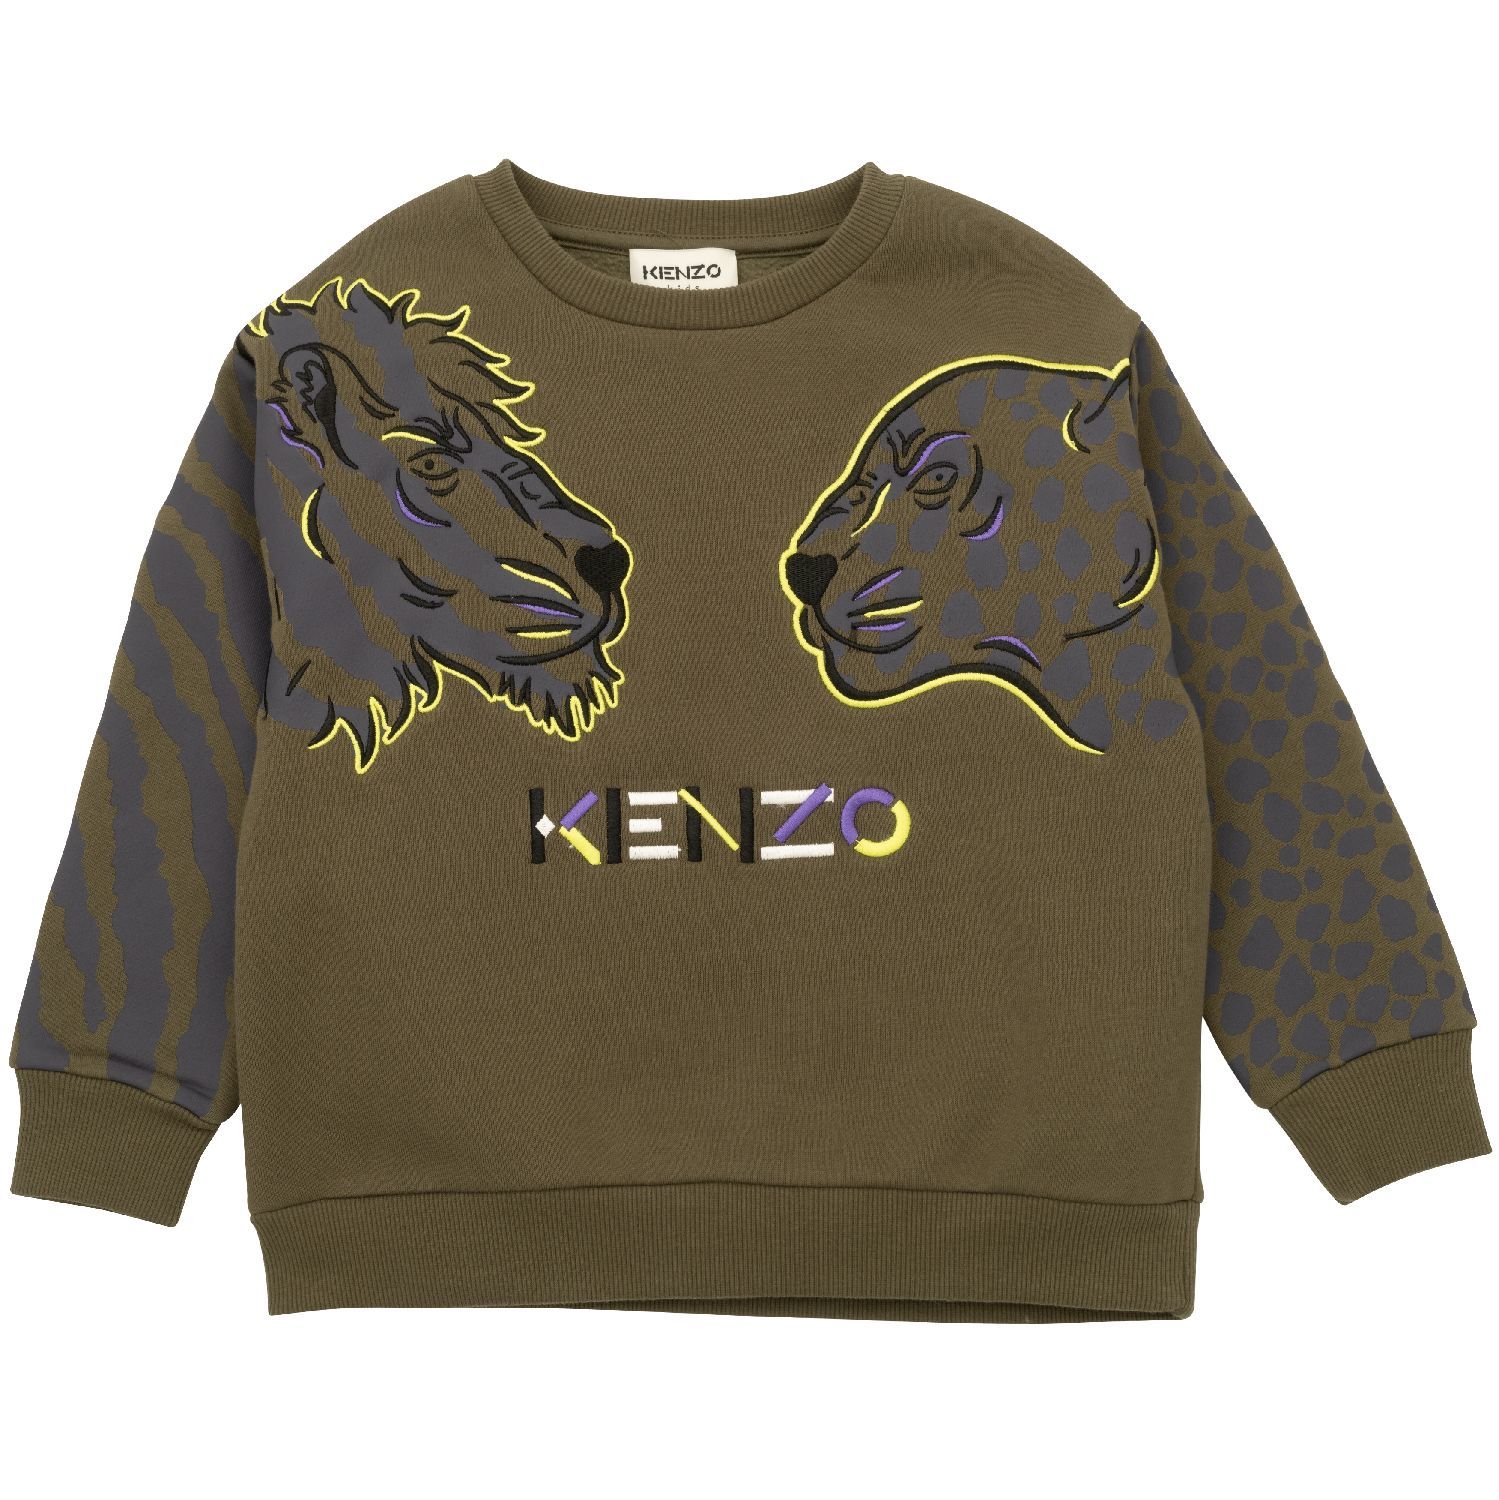 Moet gas twee weken Kenzo - Sweater lion - khaki dark green online kopen bij Prisca Kindermode  en Tienermode. K25707/655 Prisca junior